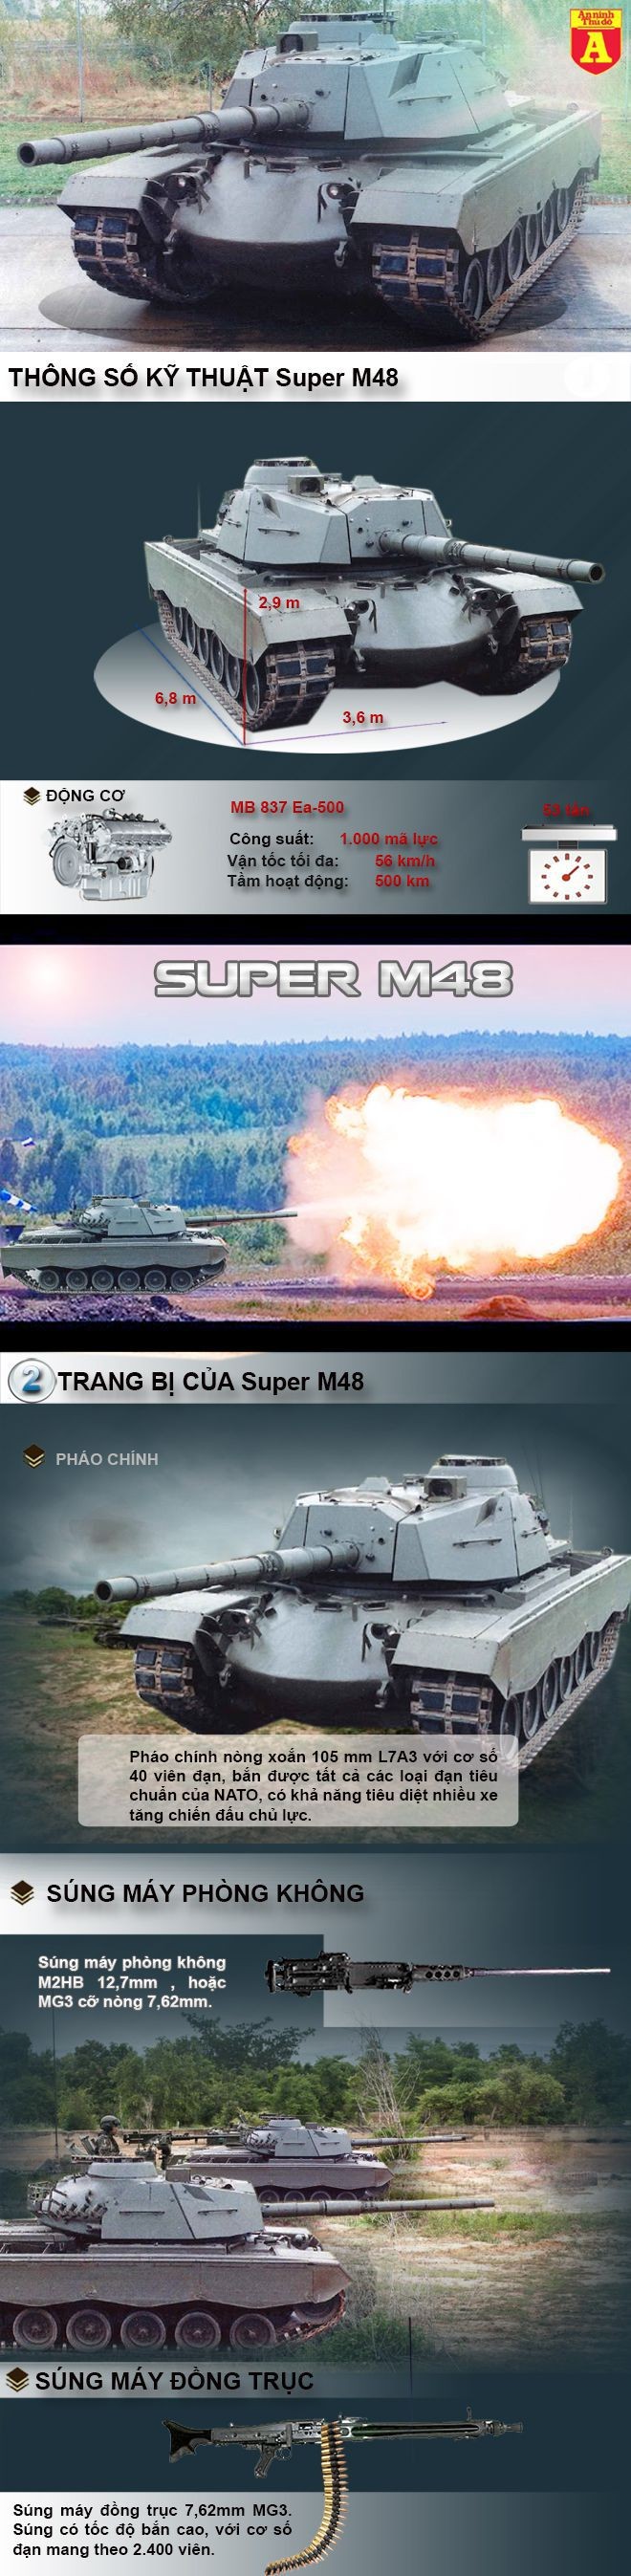 [Infographic] Super M48-Gói nâng cấp cho chiếc tăng huyền thoại của Mỹ ảnh 2